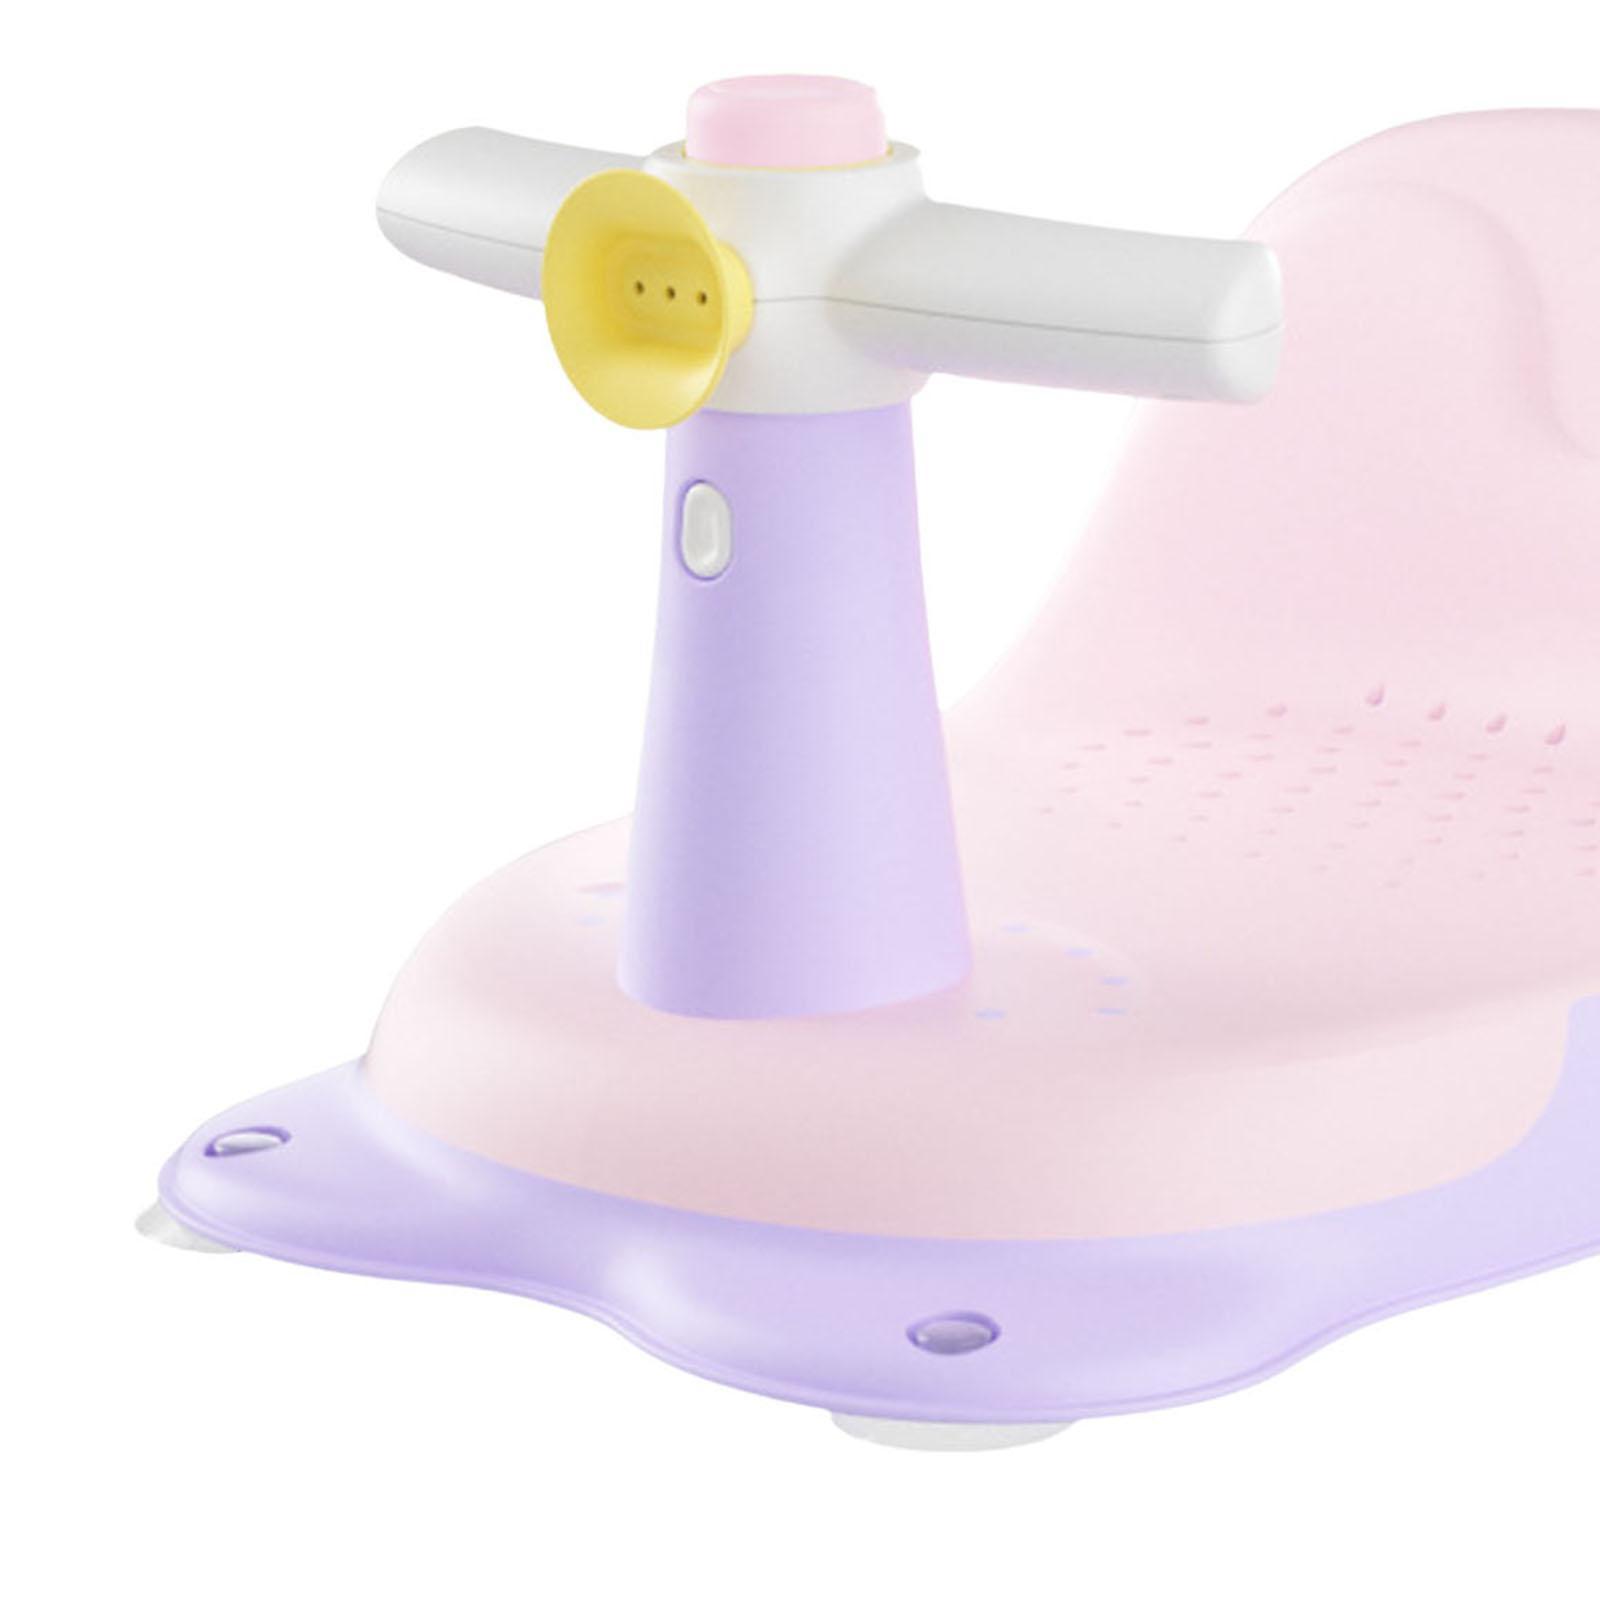 Portable Baby Bath Tub Seat Bath Tub Seat Bathtub Chair for Baby Gifts